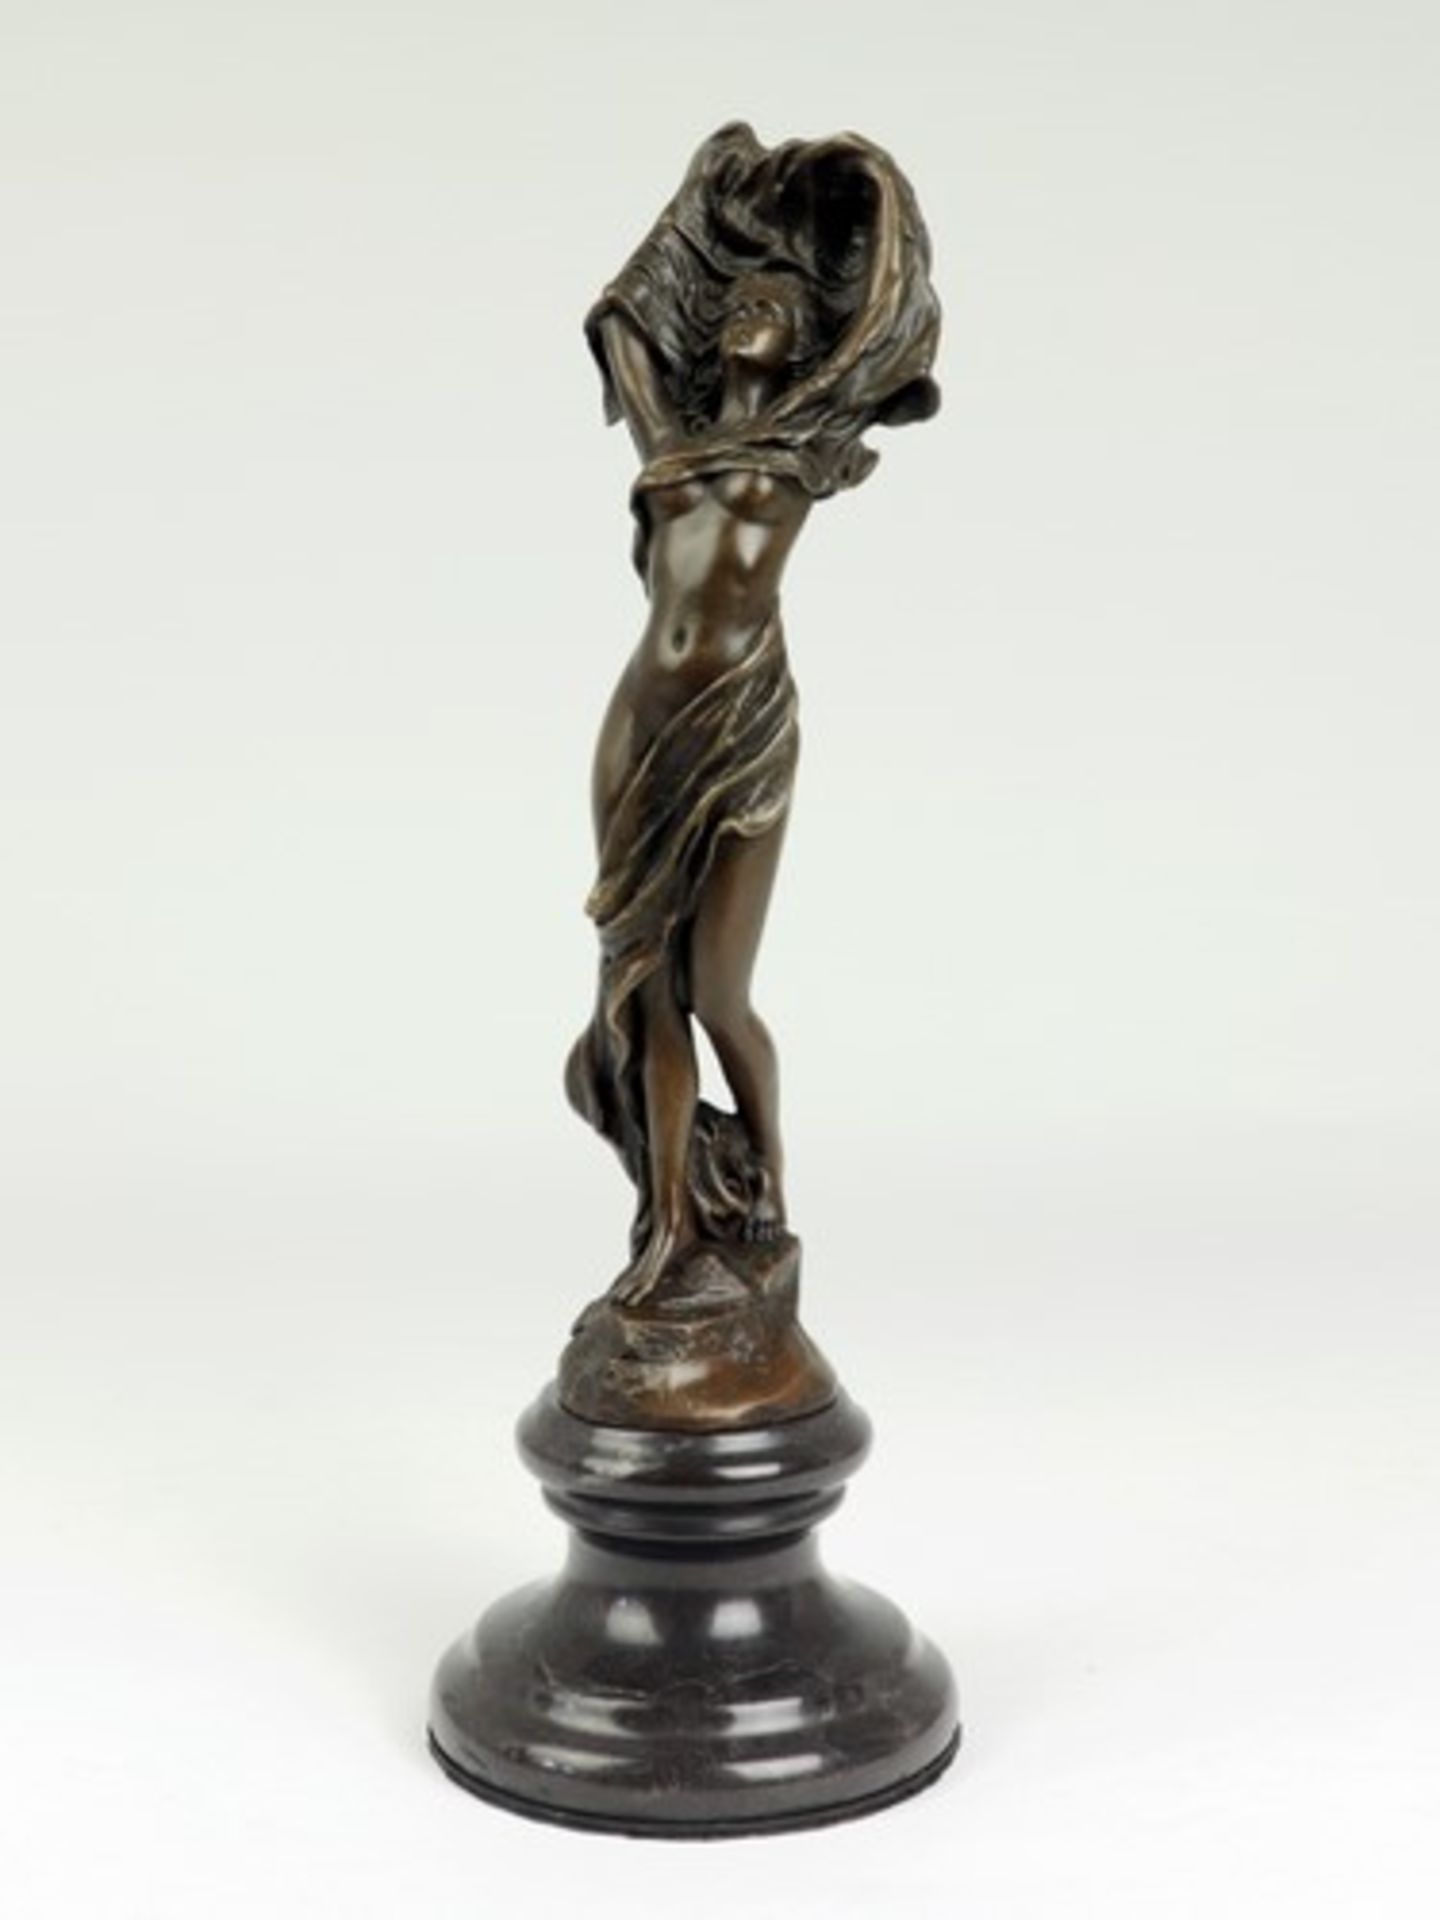 Bistolfi, Leonardo nach1859 Casale Monferrato - 1933 La Loggia, italienischer Bildhauer, Vertreter